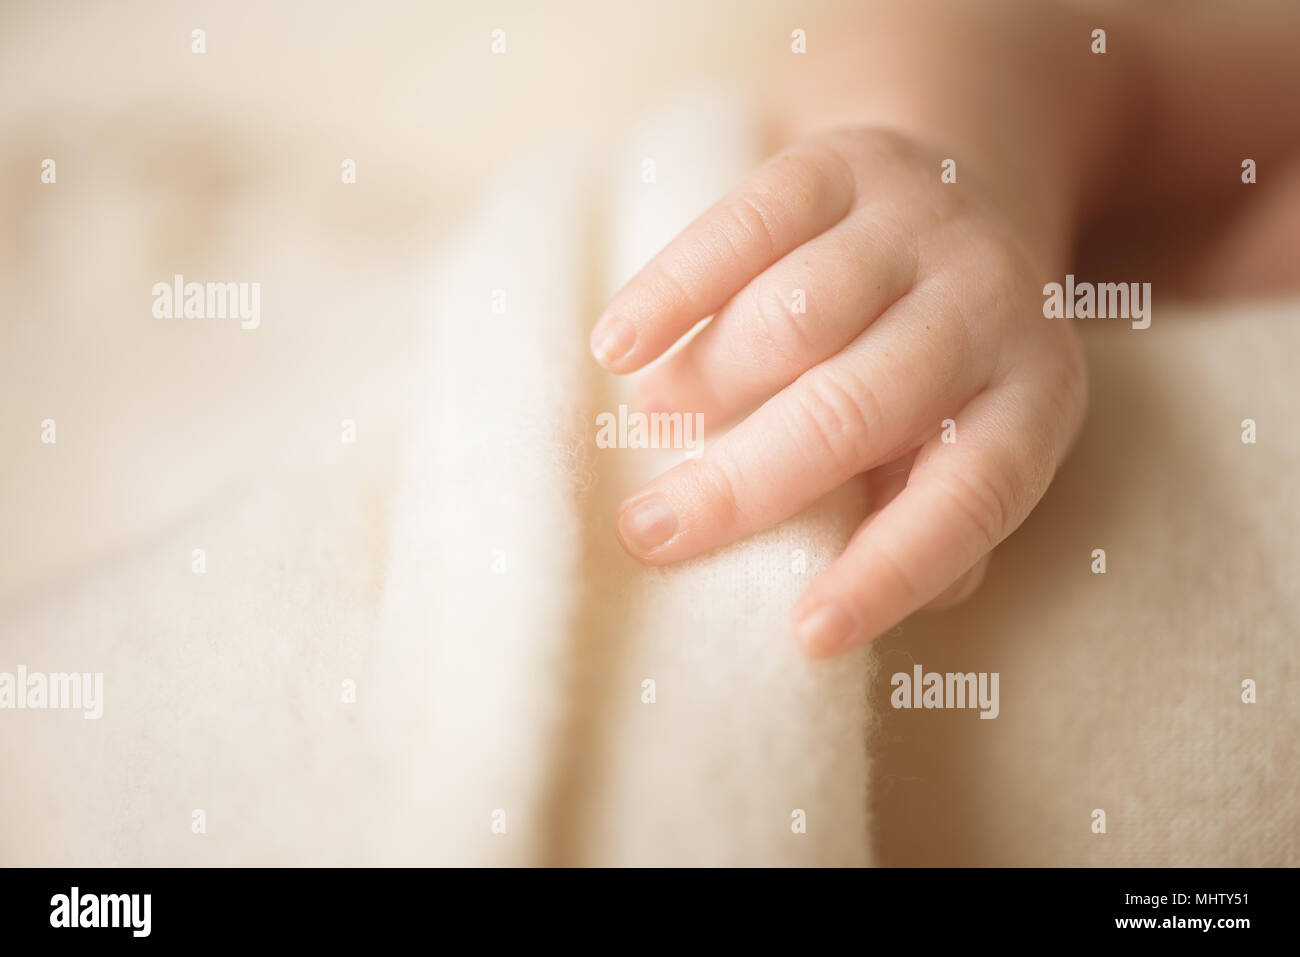 Petite main de bébé nouveau-né. Maman et son enfant. La famille, maternité, soins et naissance concept. Copie de l'espace pour votre texte Banque D'Images